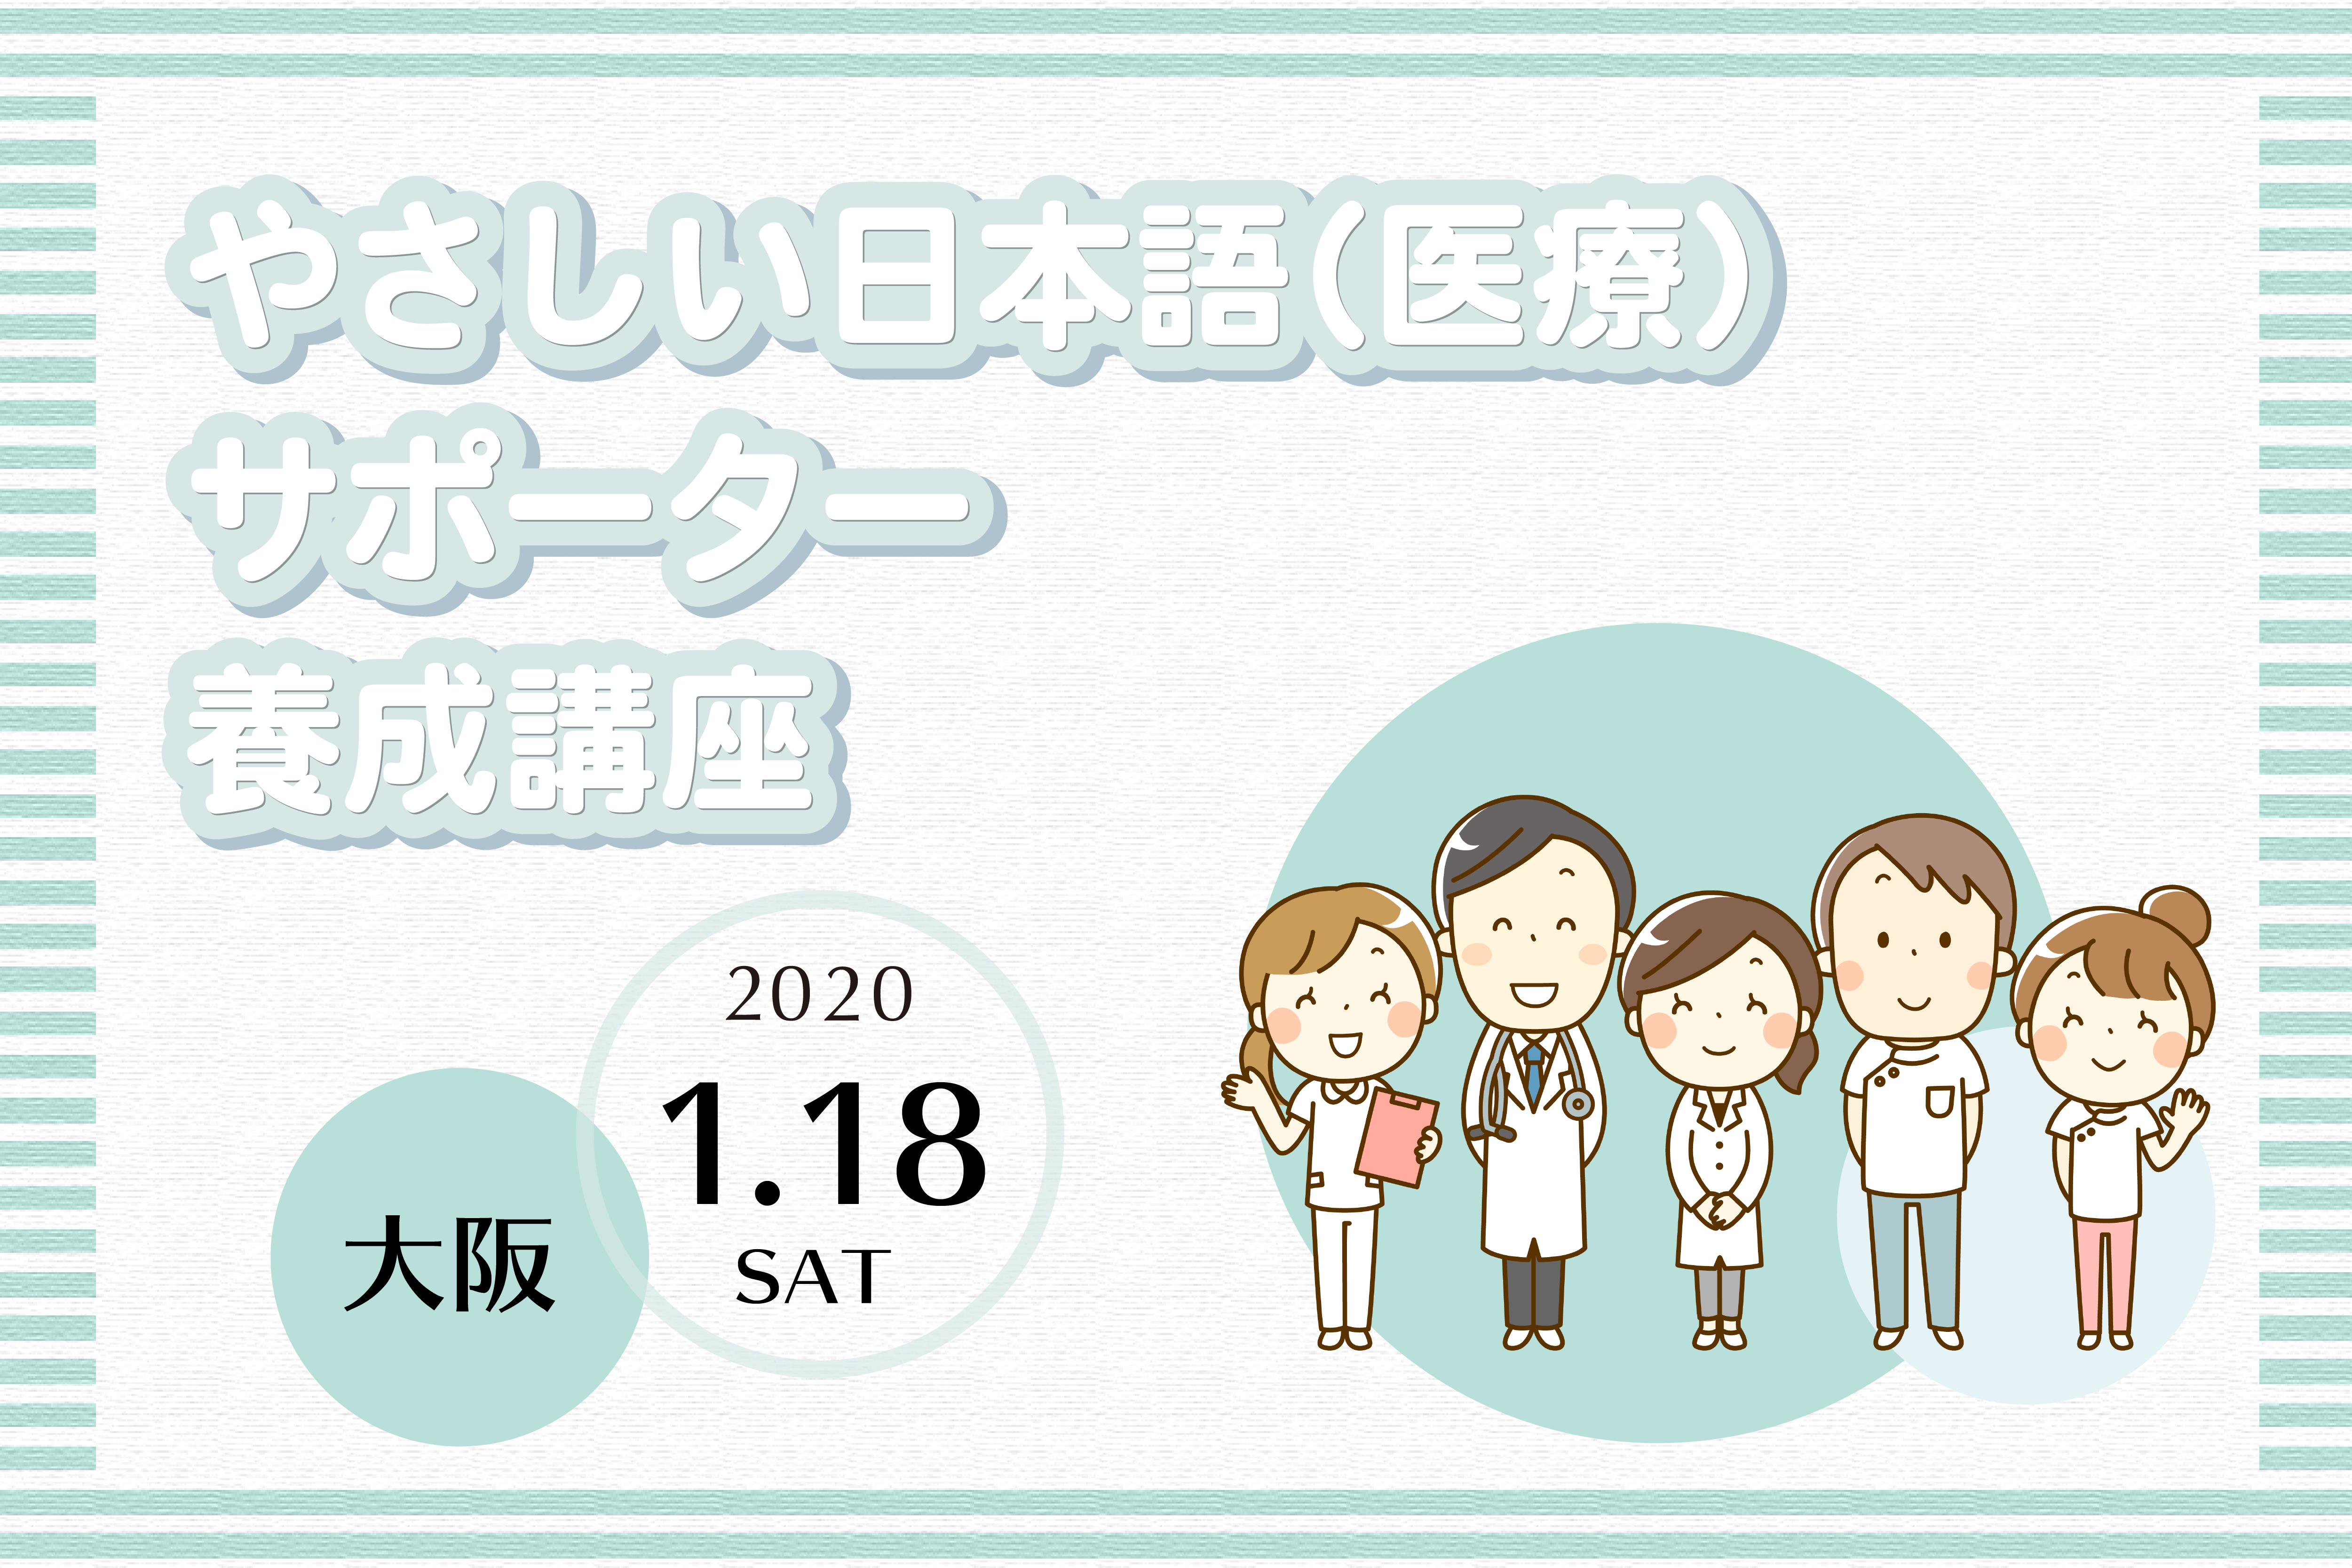 大阪 2020年1月18日 やさしい日本語 医療 サポーター養成講座を開催